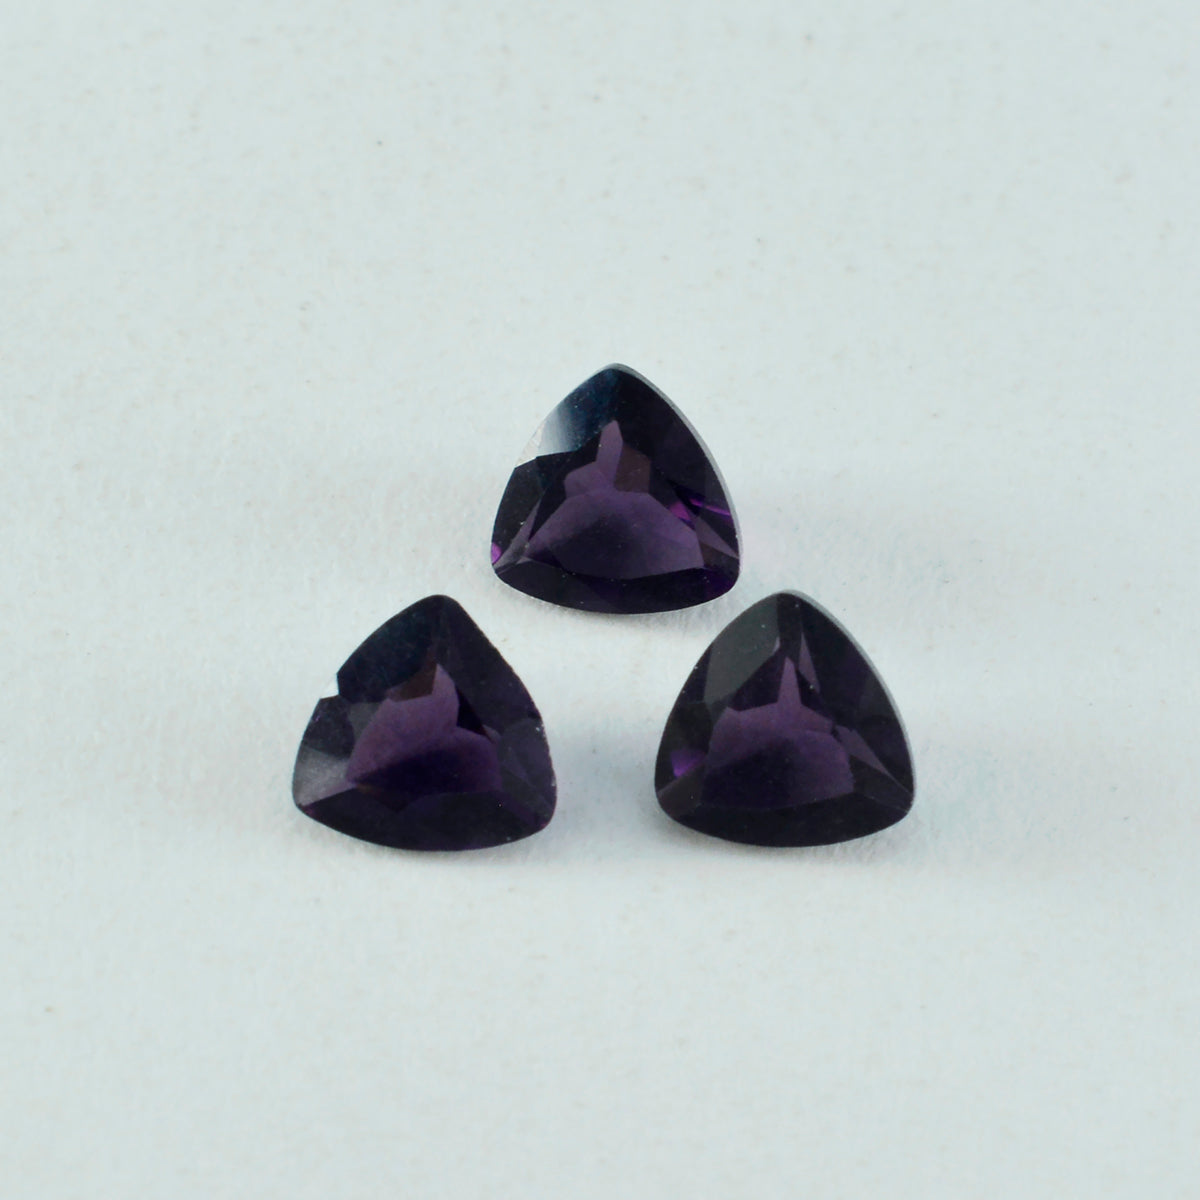 Riyogems 1 Stück violetter Amethyst mit CZ, facettiert, 12 x 12 mm, Billionenform, gut aussehender Qualitätsedelstein